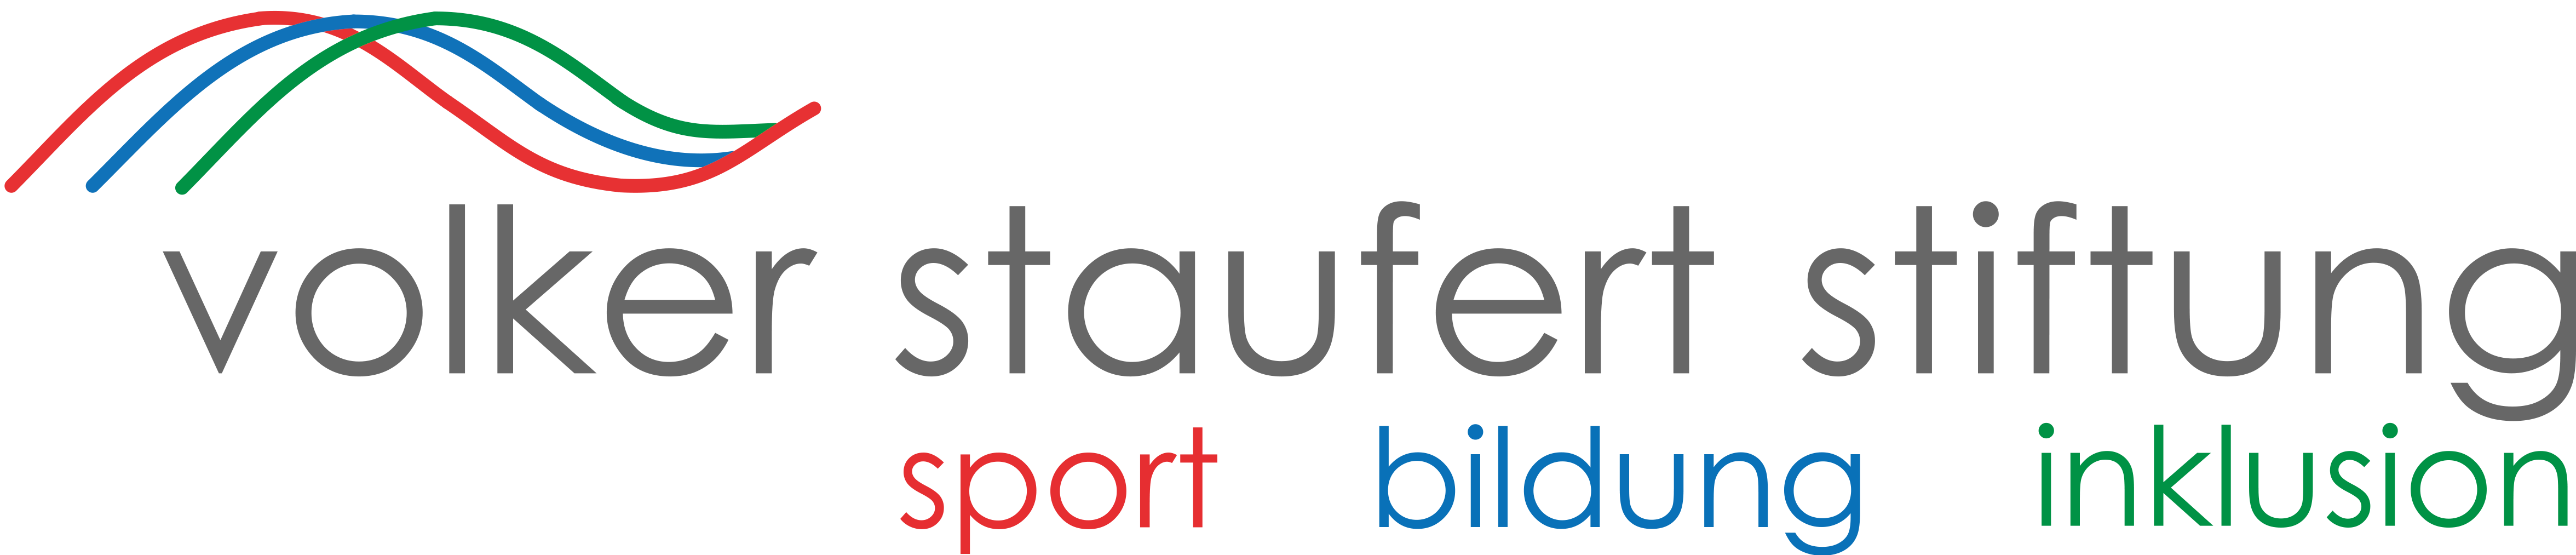 Volker-Staufert-Stiftung